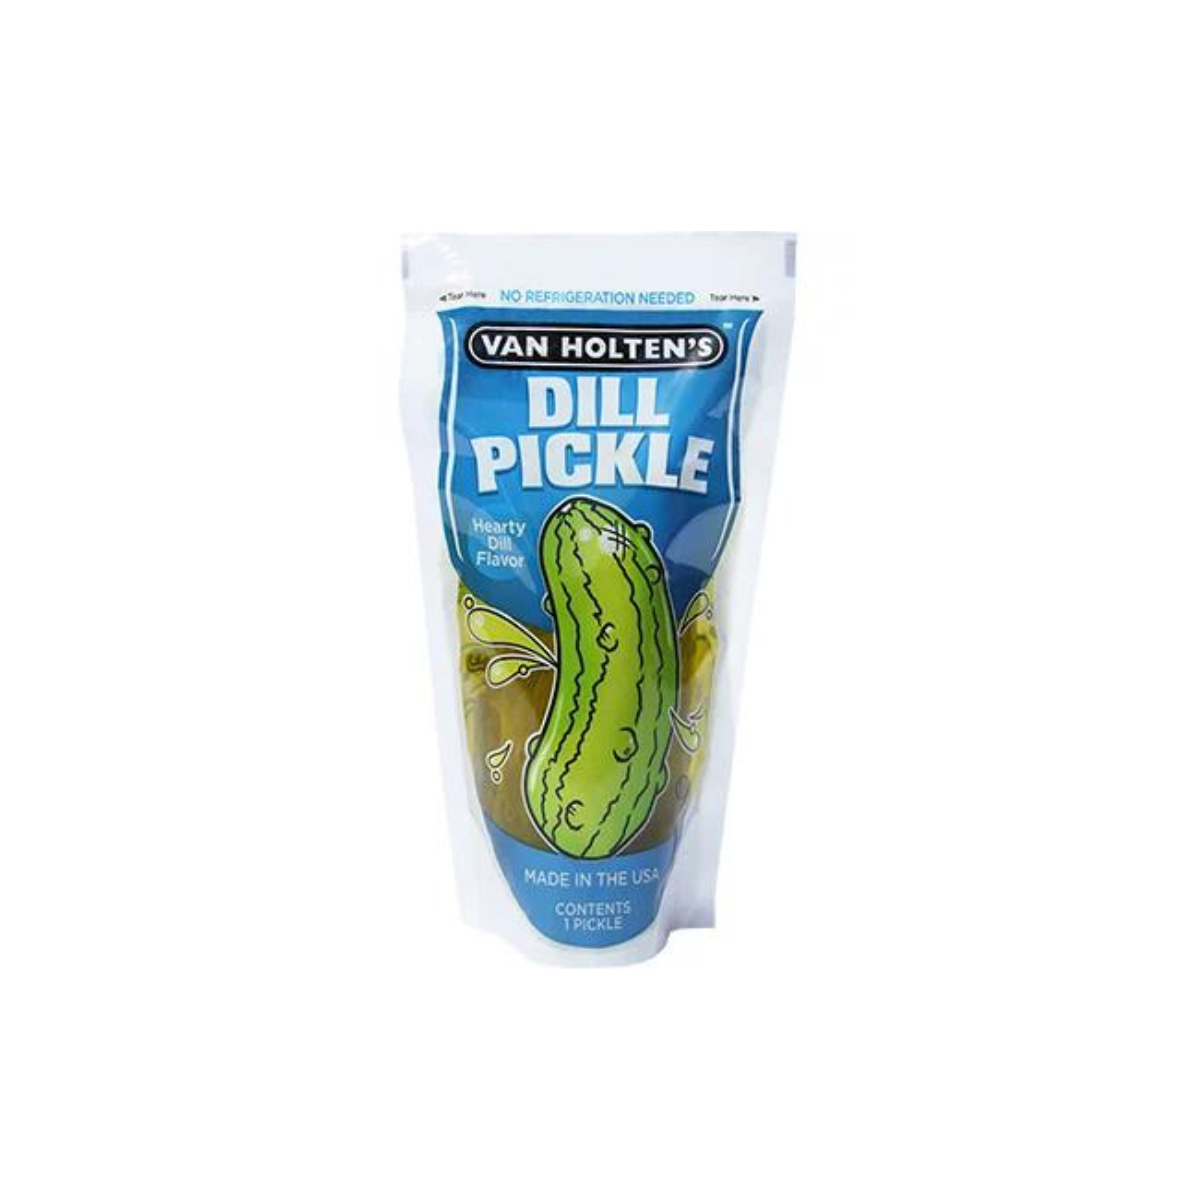 Van Holten's Dill Pickle Jumbo